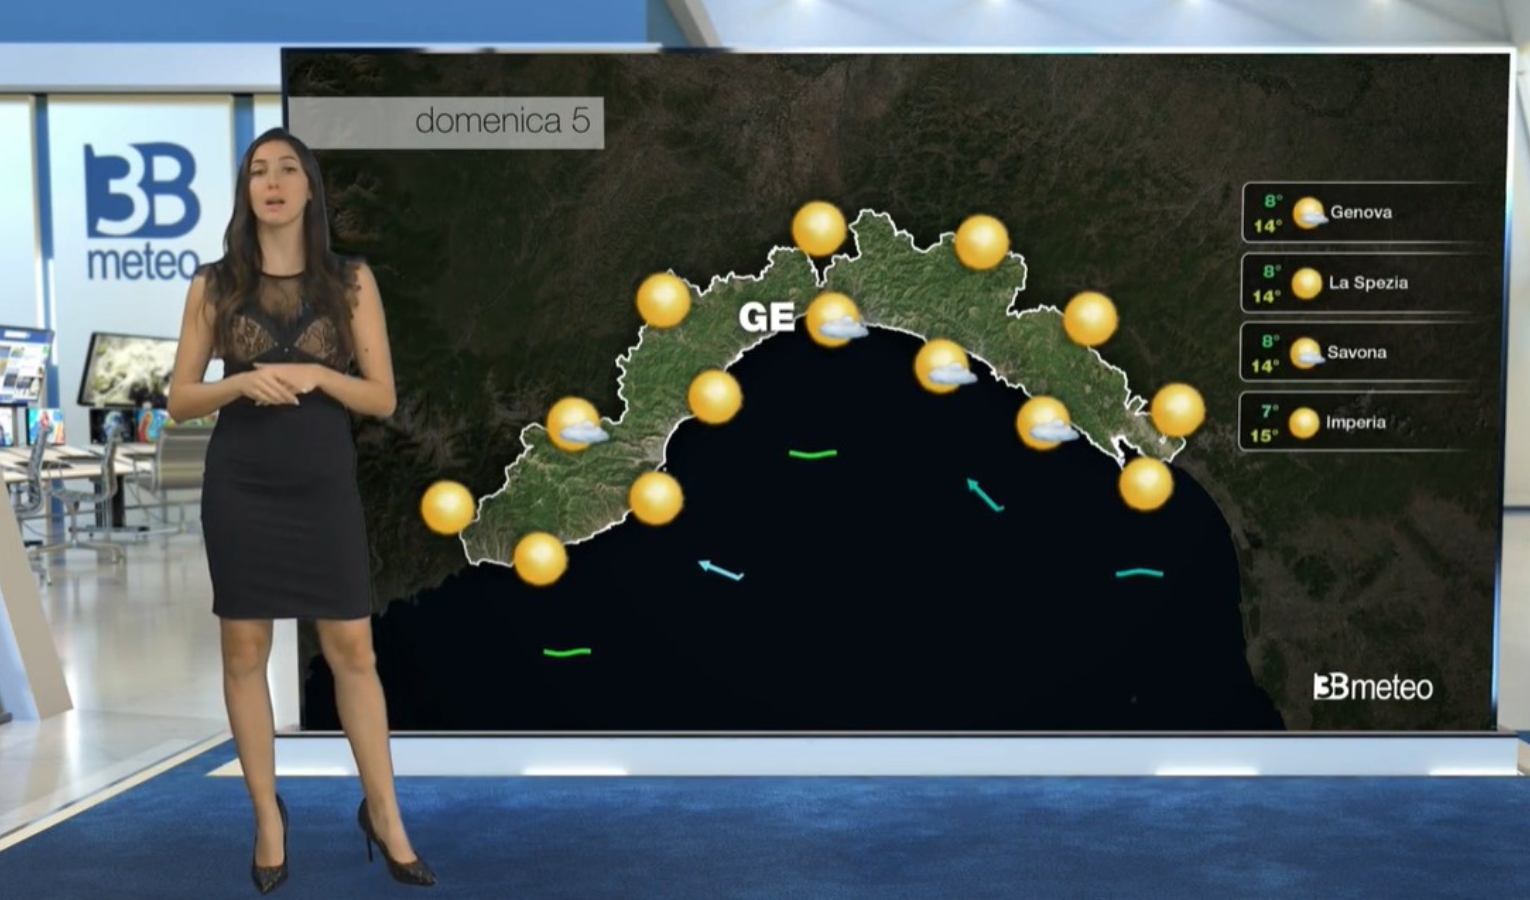 Meteo in Liguria, inizio settimana con il sole: le previsioni